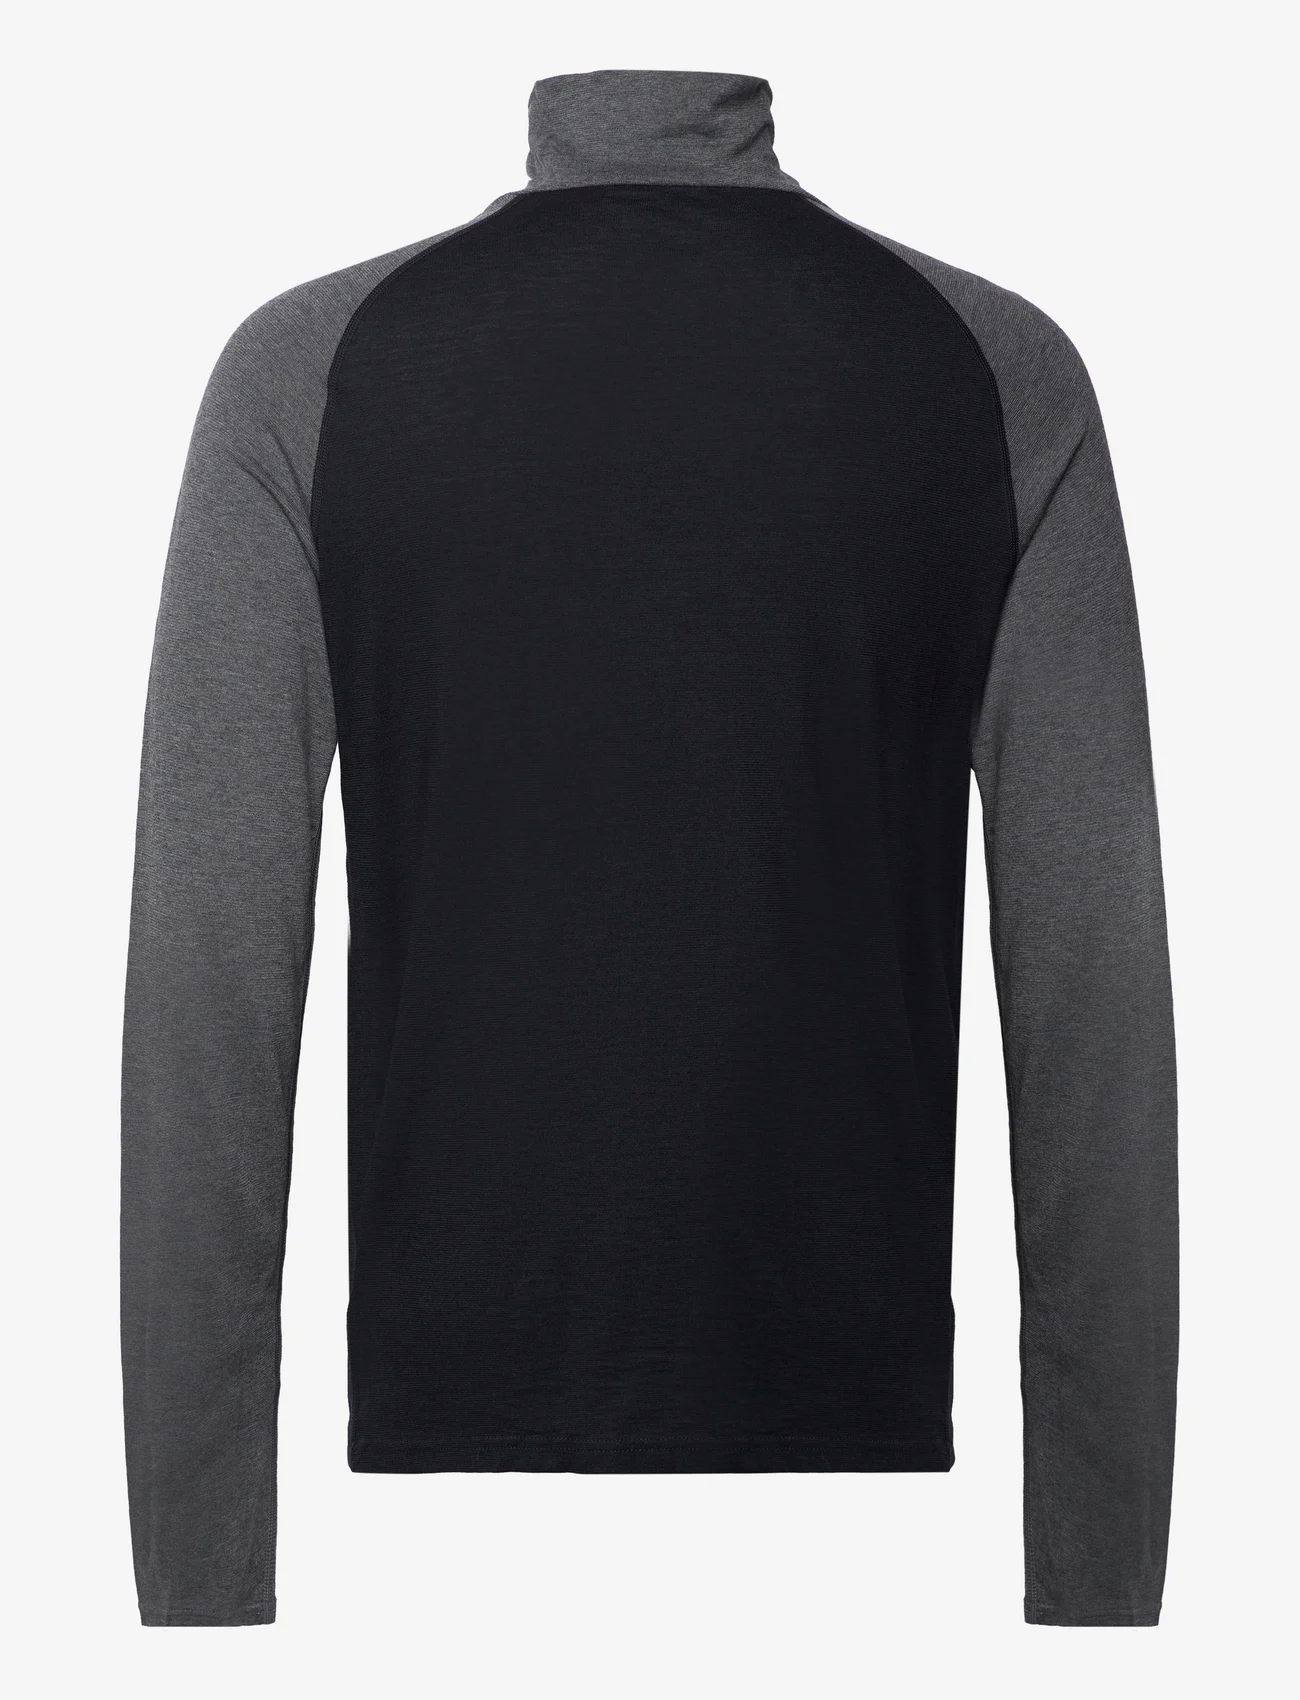 Bula - Retro Merino Wool Halfzip Sweater - kurtki polarowe - black - 1